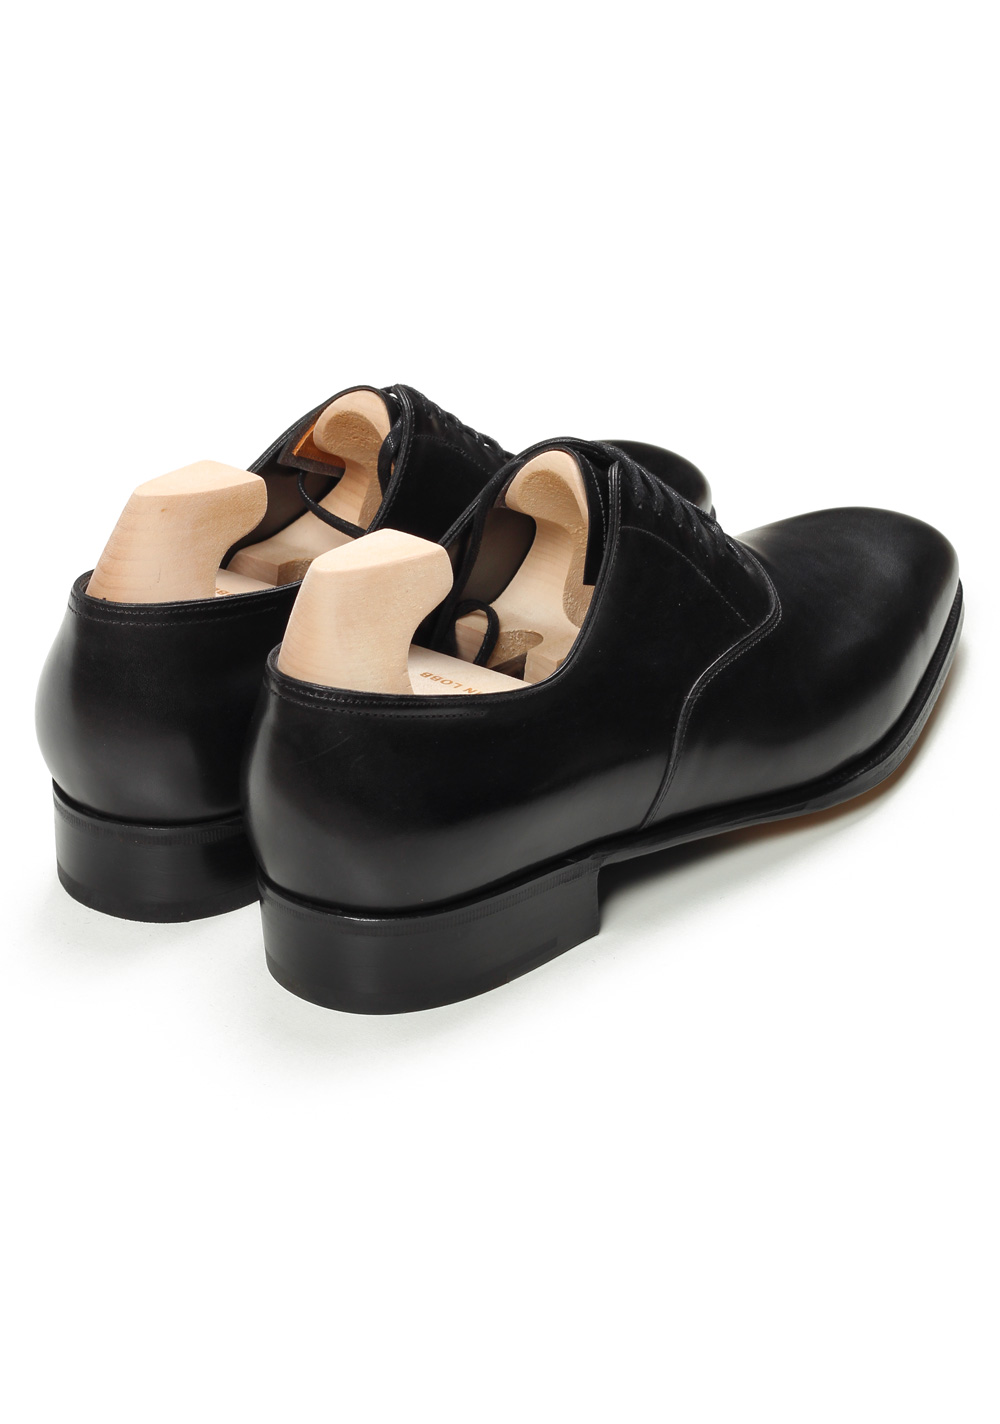 John Lobb Seaton Black Oxford Shoes Size 10 UK / 11 U.S. On 7000 Last | Costume Limité